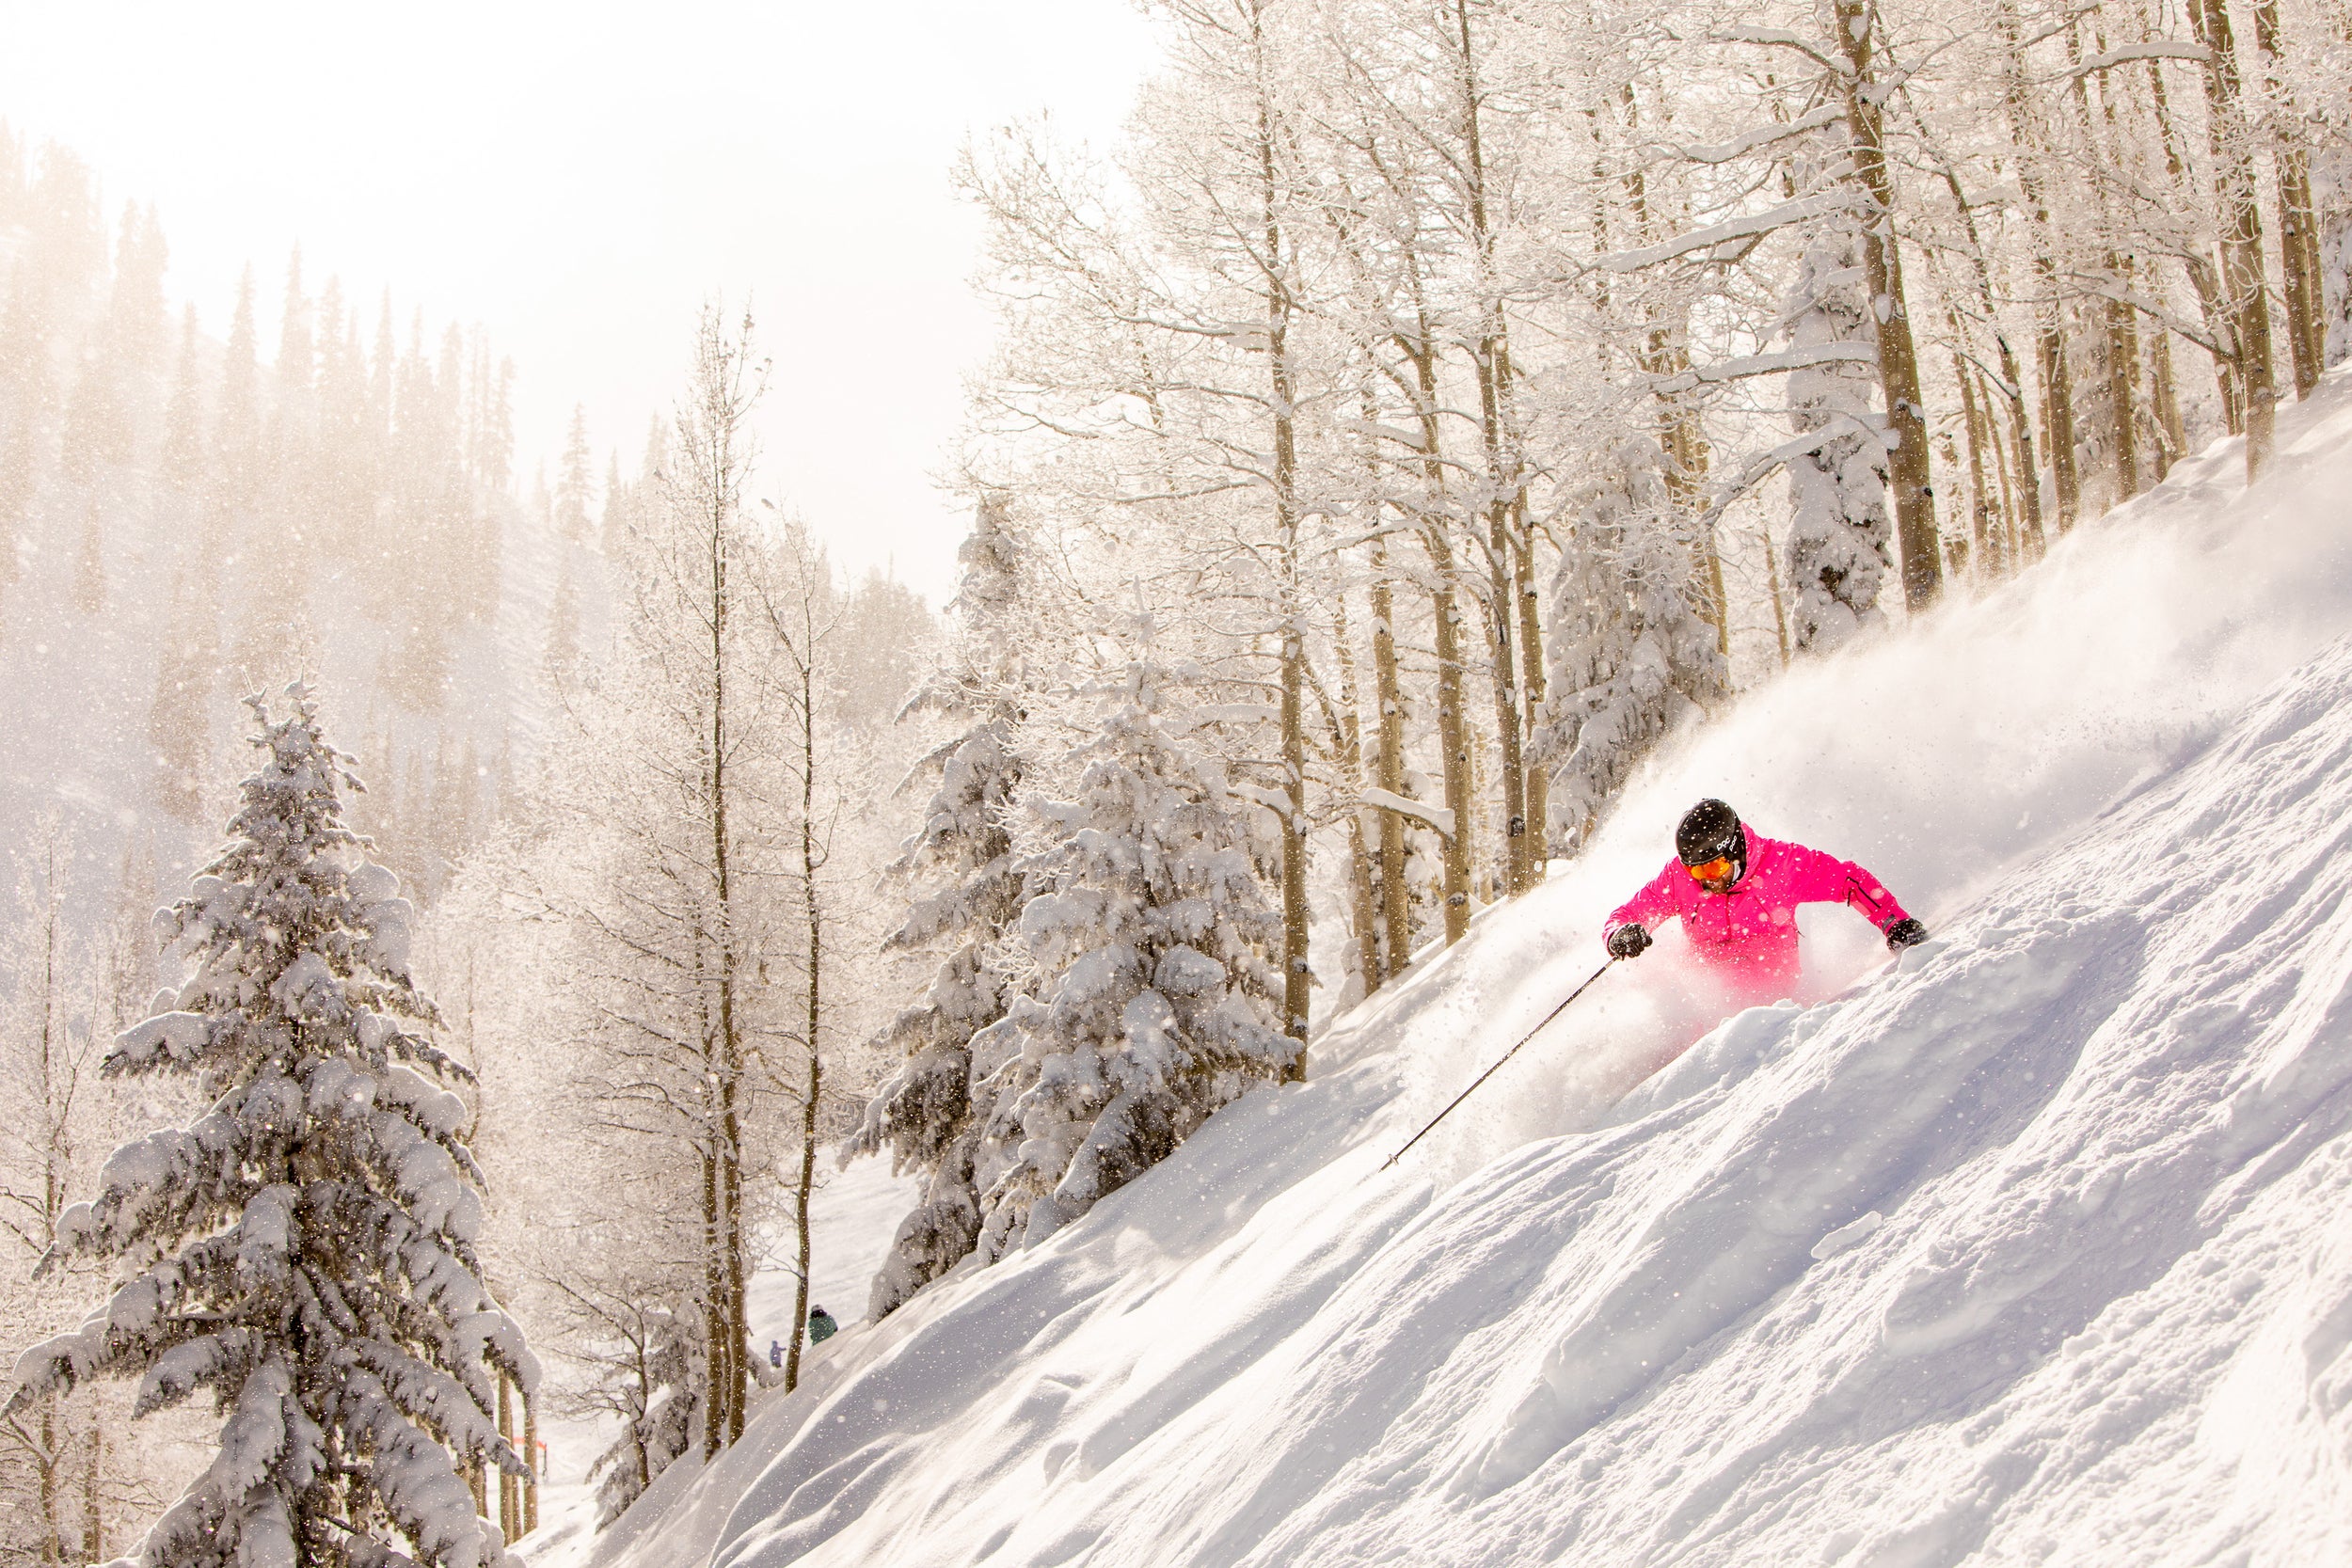 Best Ski Resorts in America